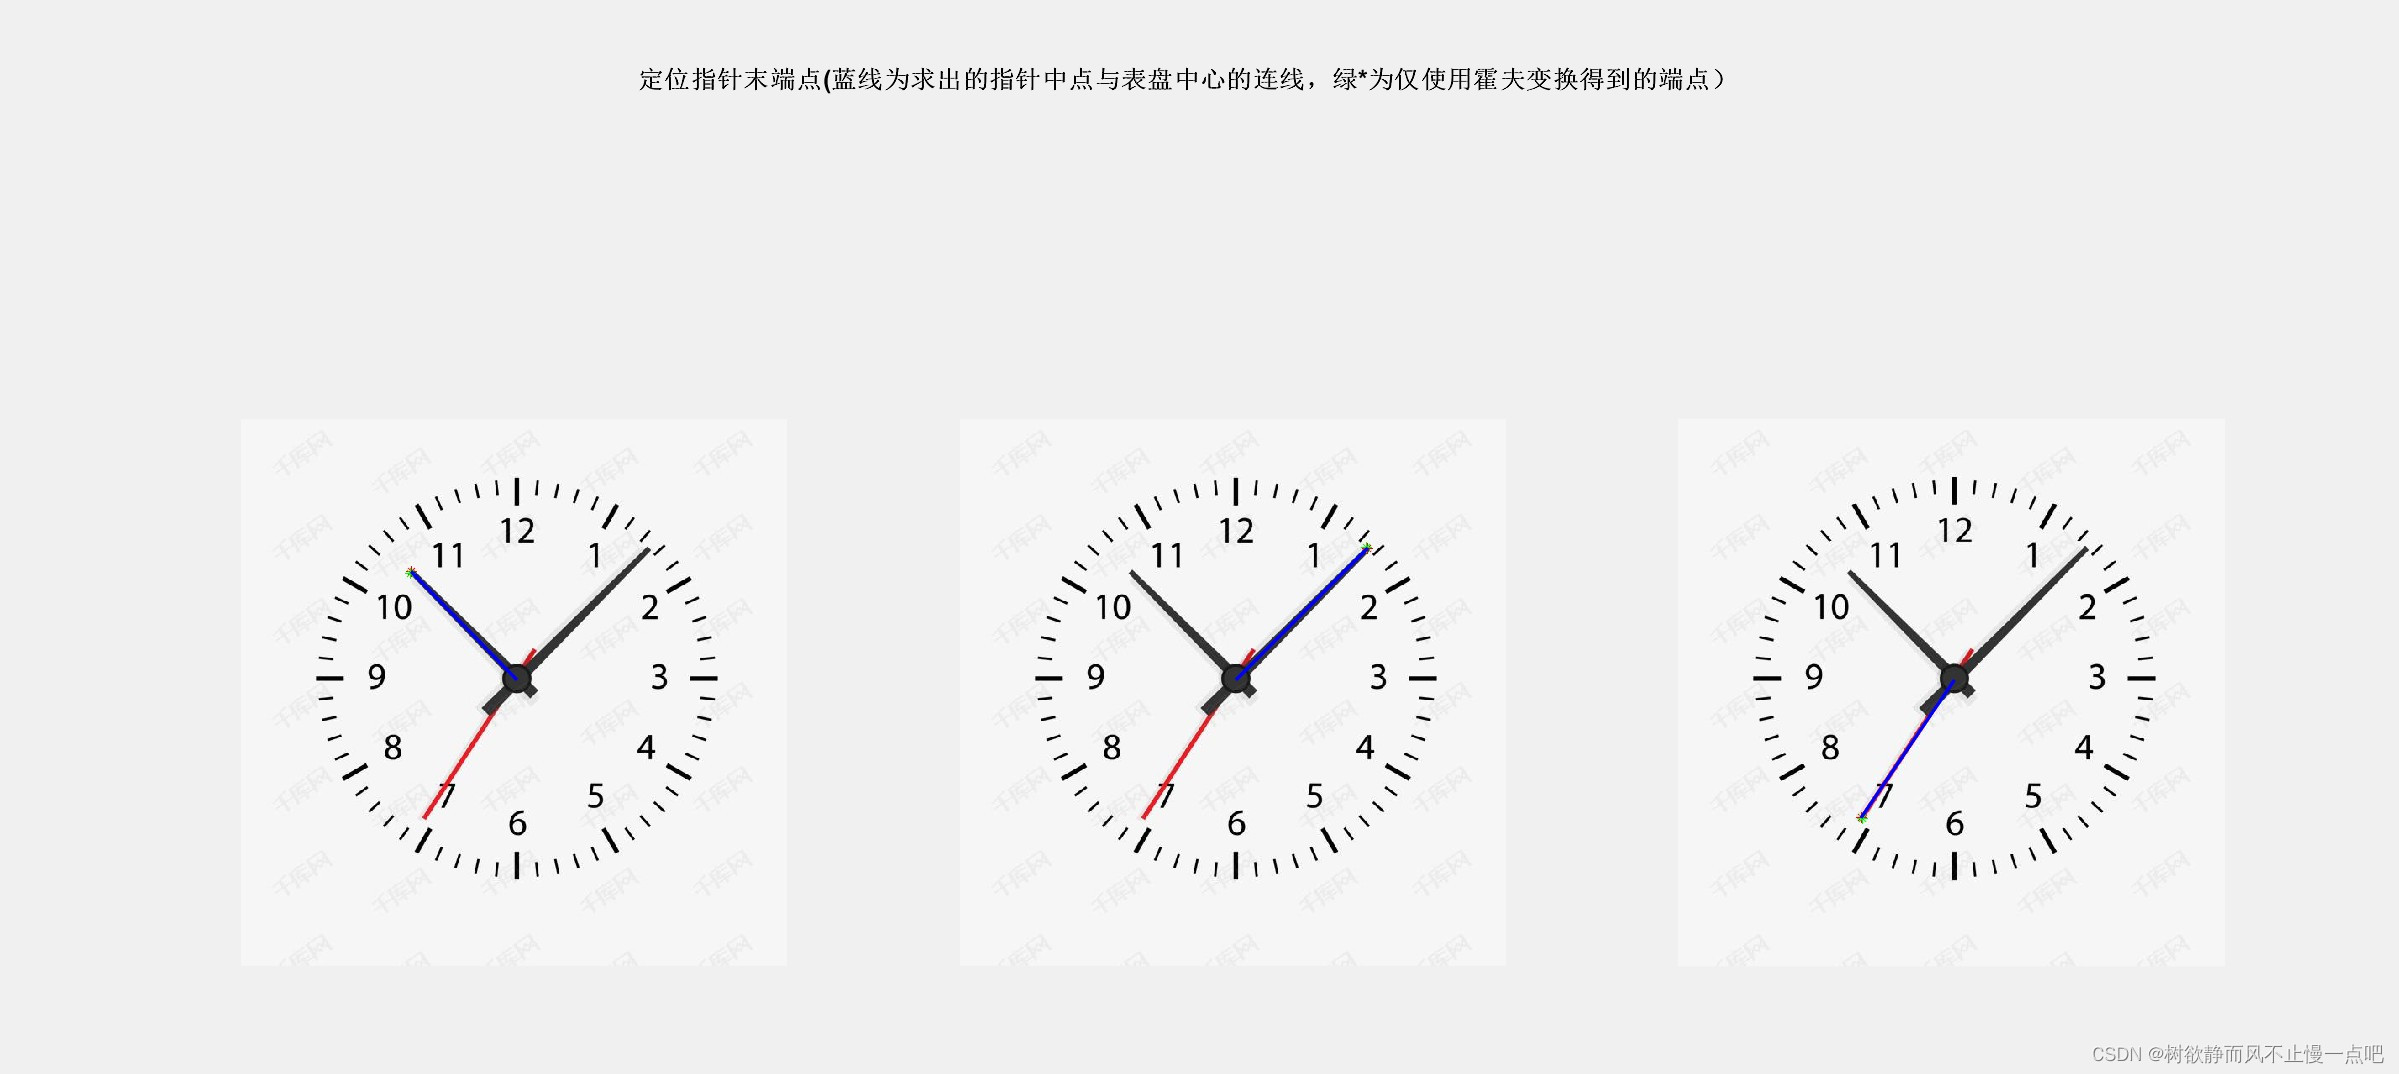 华南农业大学|图像处理与分析技术综合测试|题目解答：识别时钟上时间